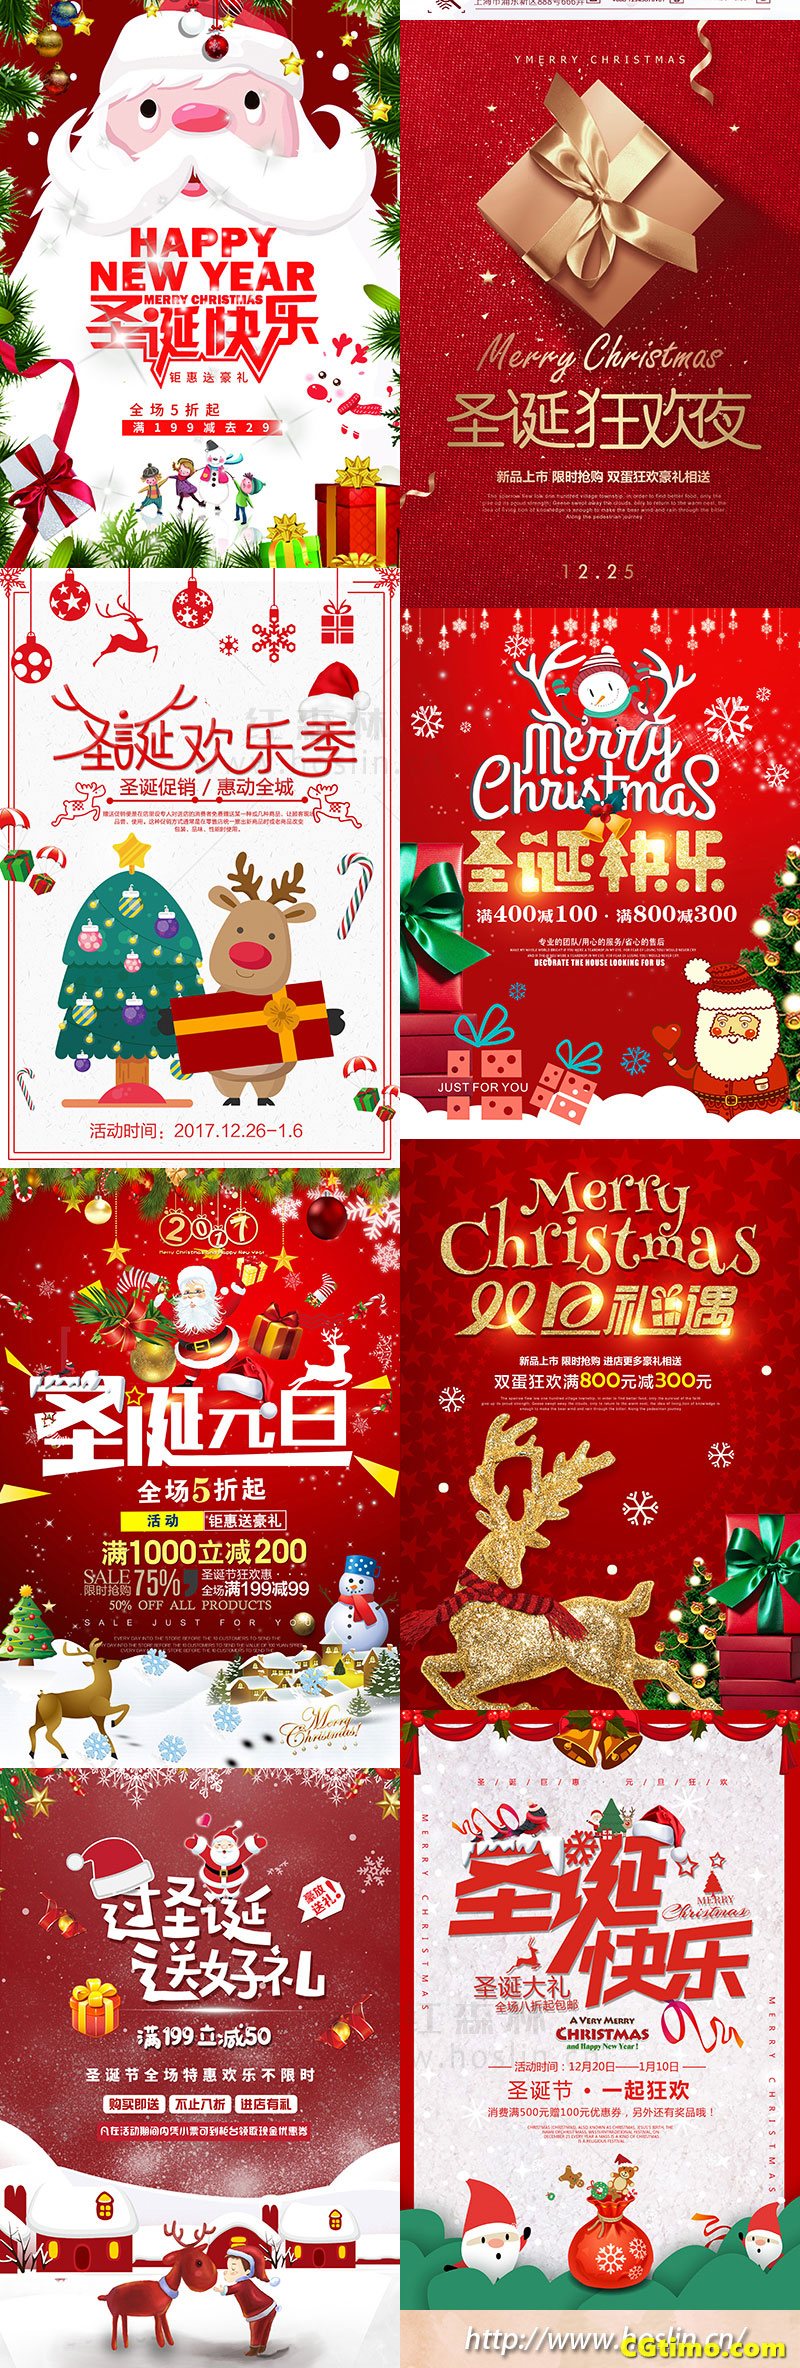 PSD素材-圣诞节日促销海报psd模板 PSD素材 第8张